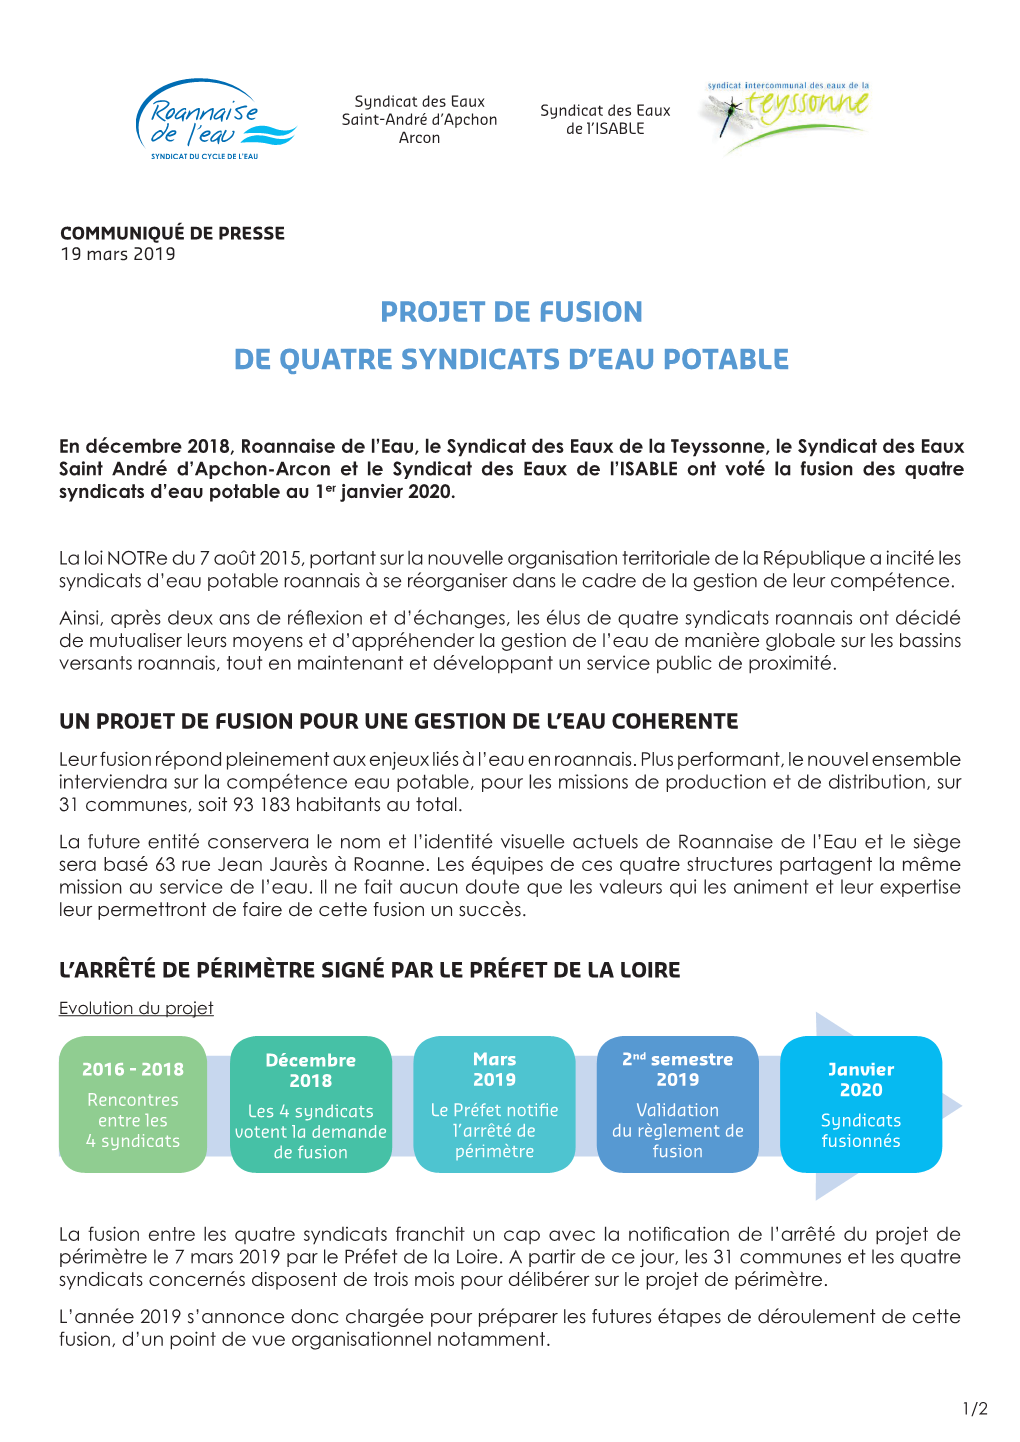 PROJET DE FUSION DE Quatre Syndicats D'eau Potable